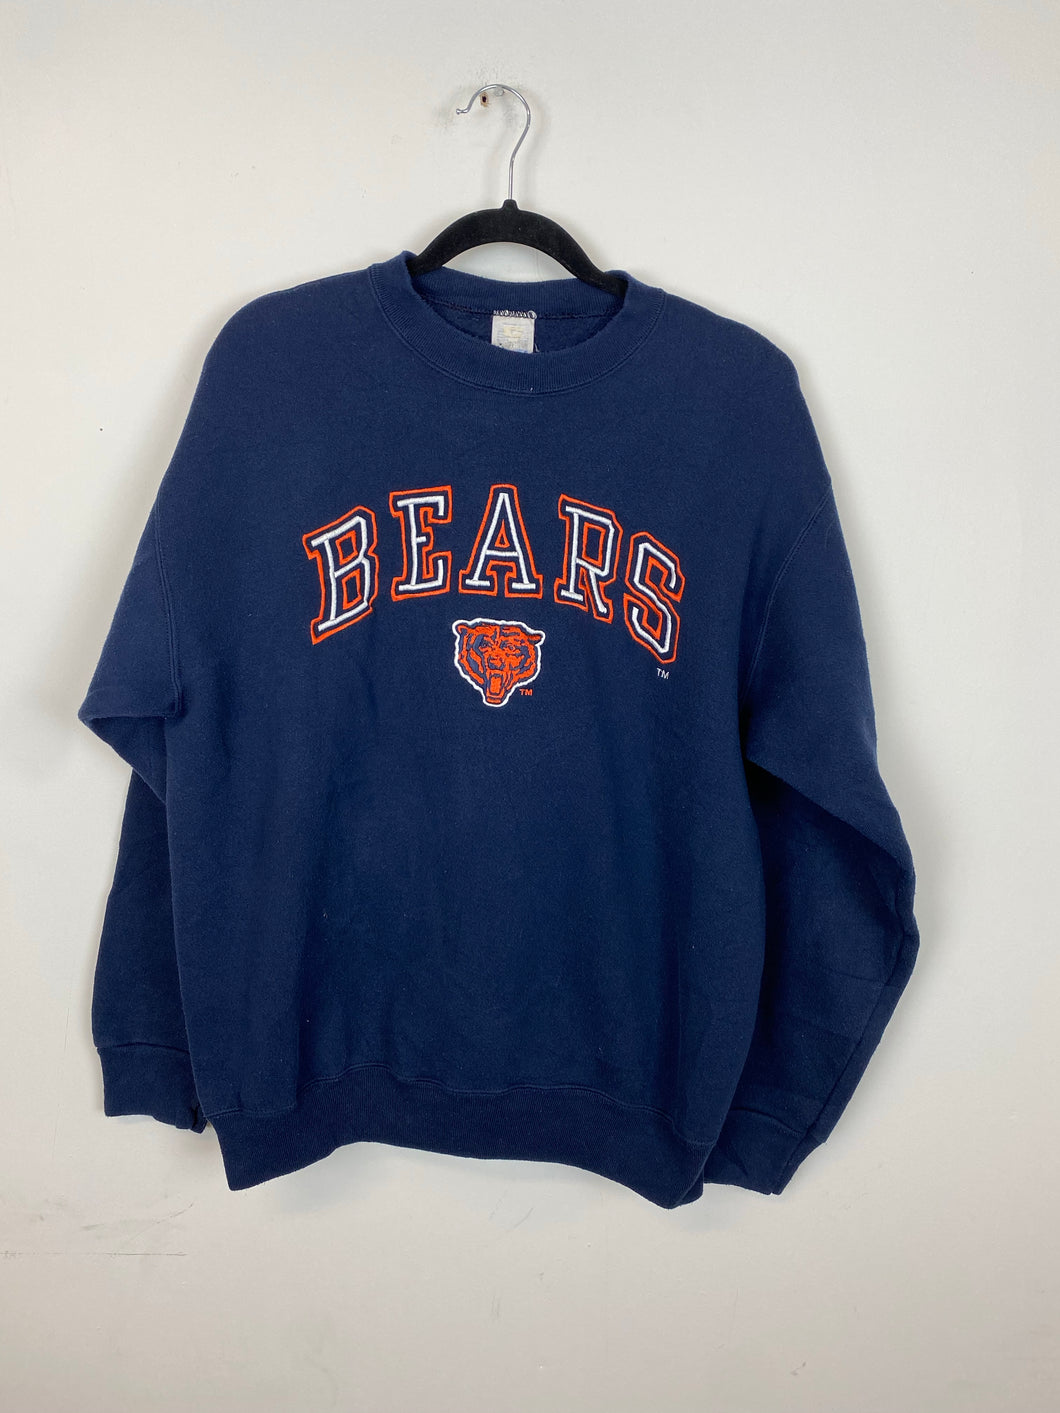 Vintage embroidered Bears crewneck - M